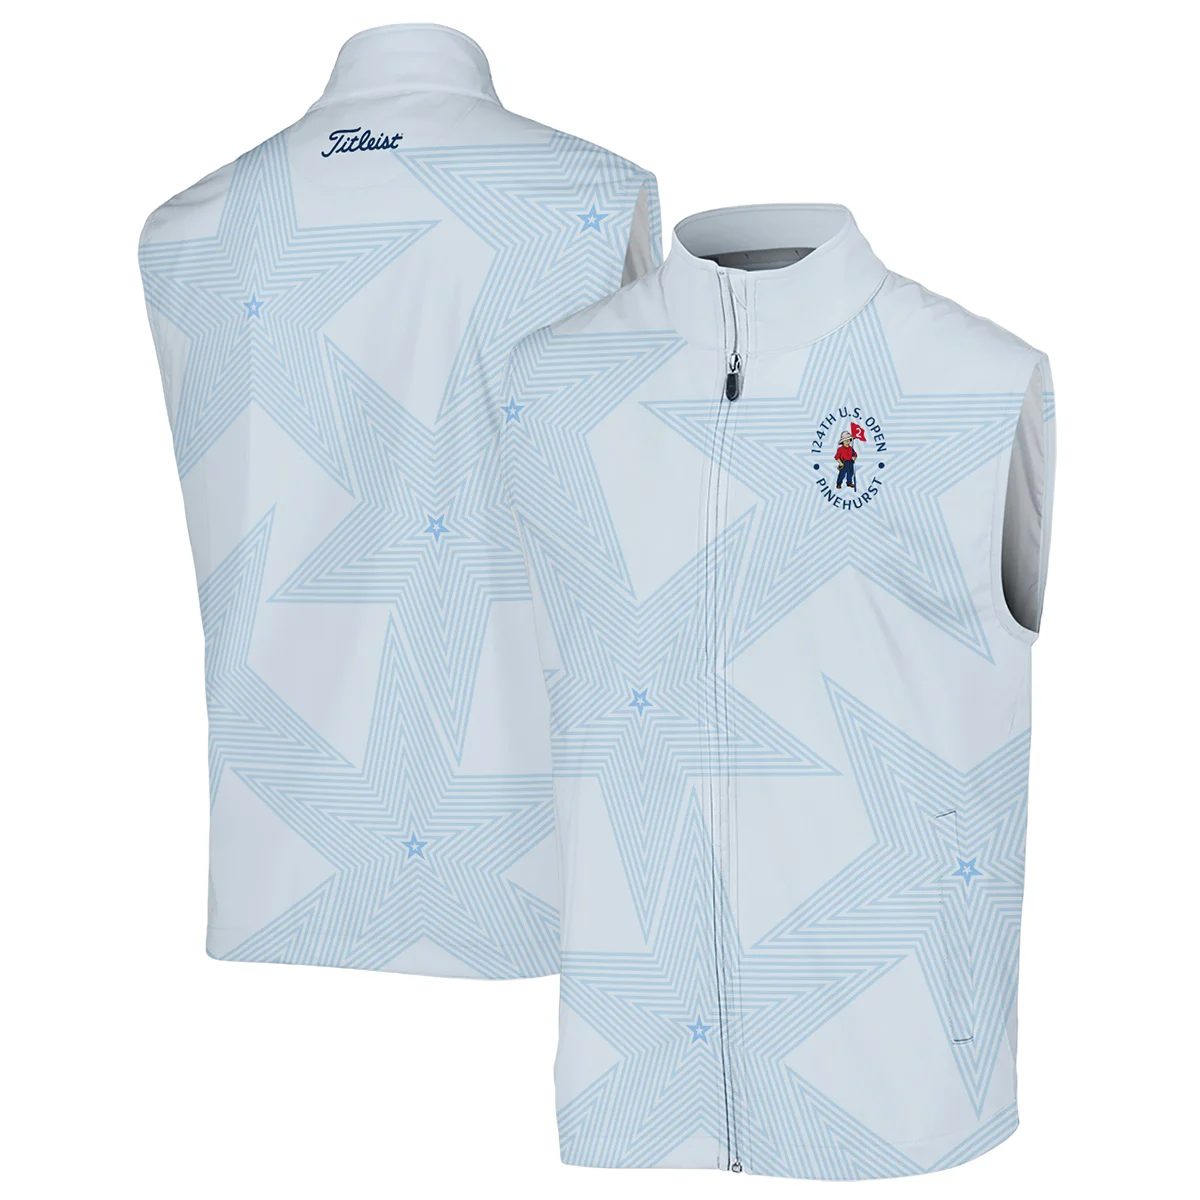 Golf 124th U.S. Open Pinehurst Titleist Zipper Hoodie Shirt Stars Light Blue Golf Sports All Over Print Zipper Hoodie Shirt